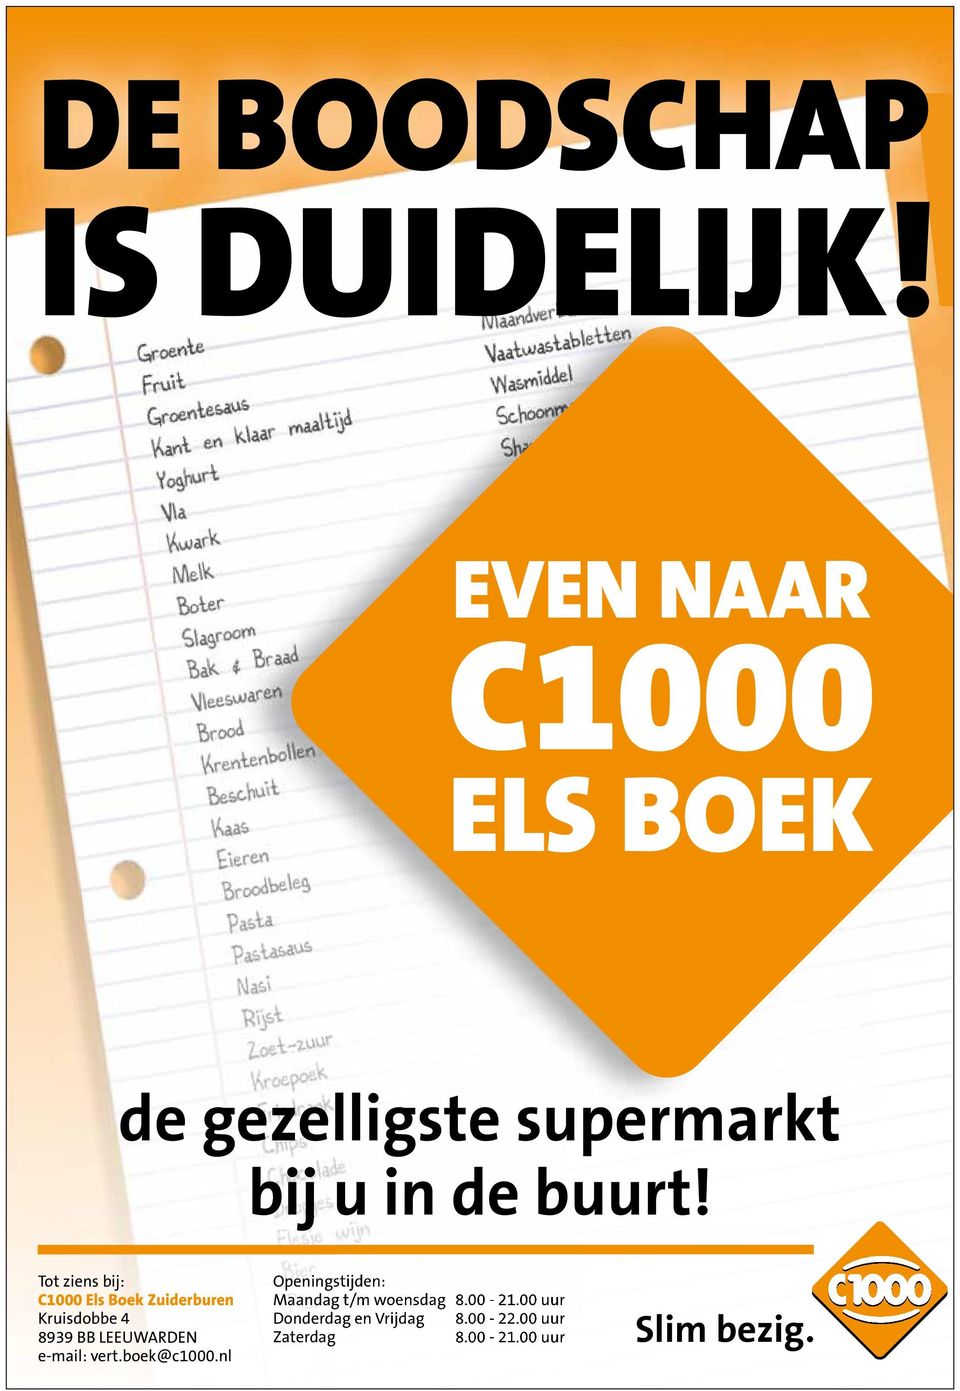 Tot ziens bij: C1000 Els Boek Zuiderburen Kruisdobbe 4 8939 BB LEEUWARDEN e-mail: vert.